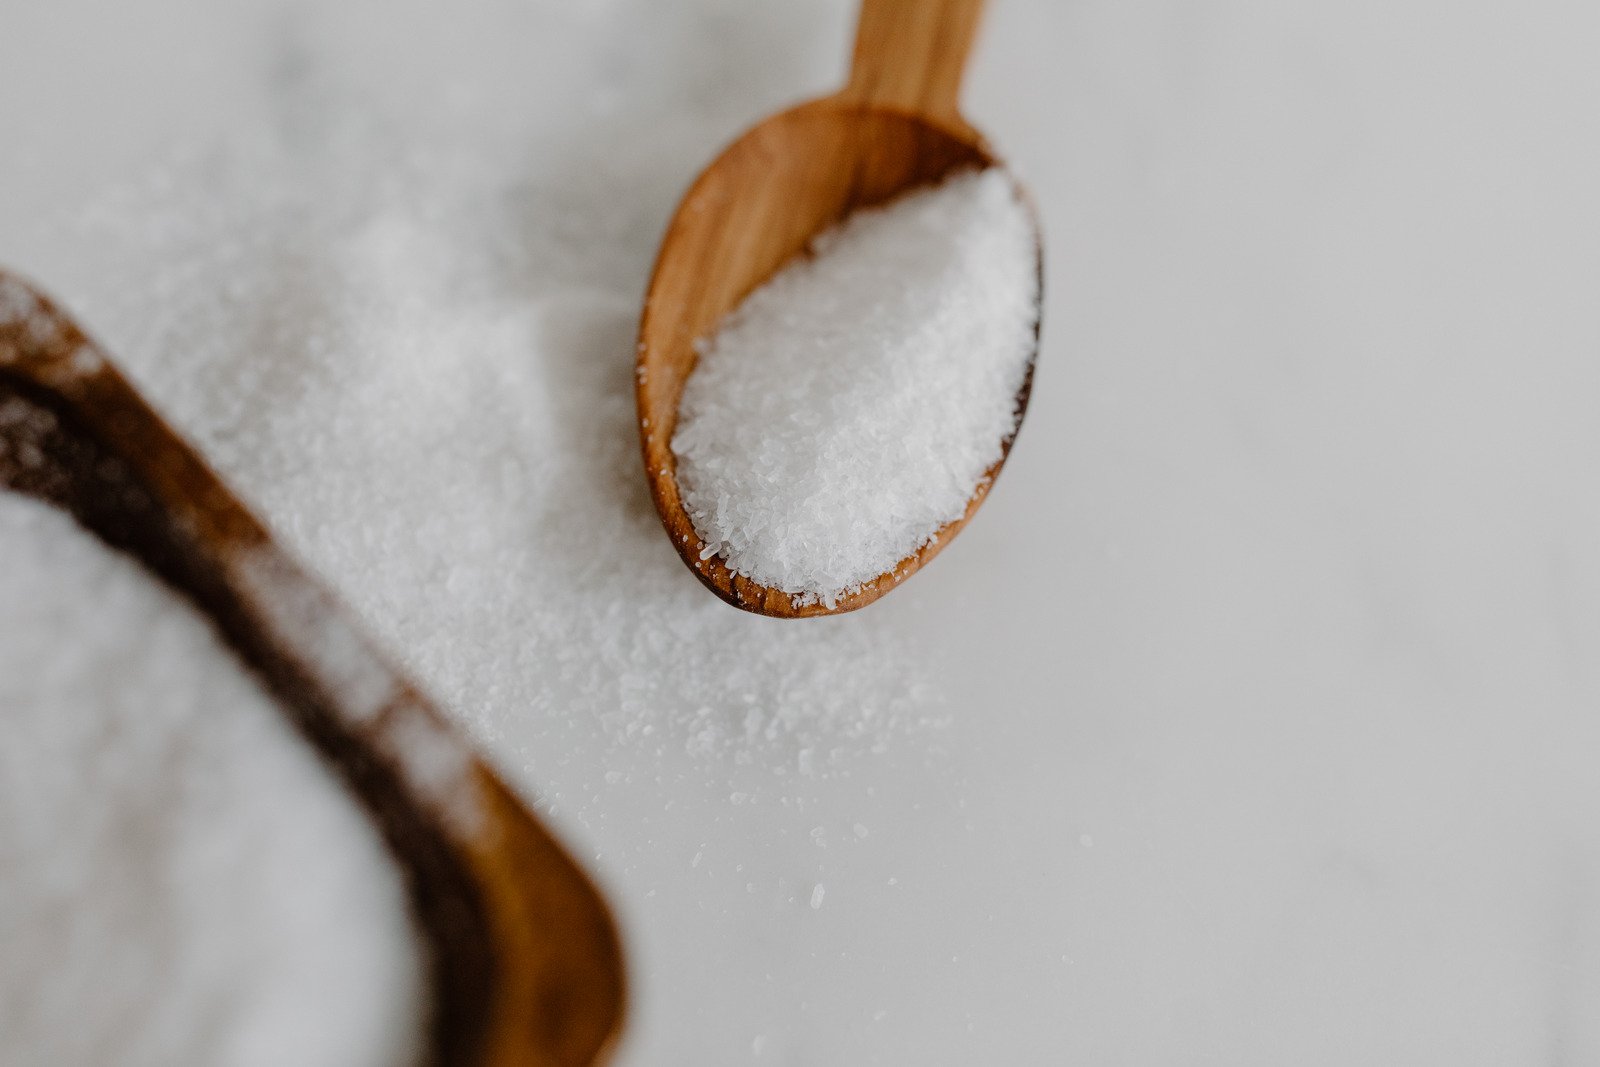 a bath salt on a wooden spoon